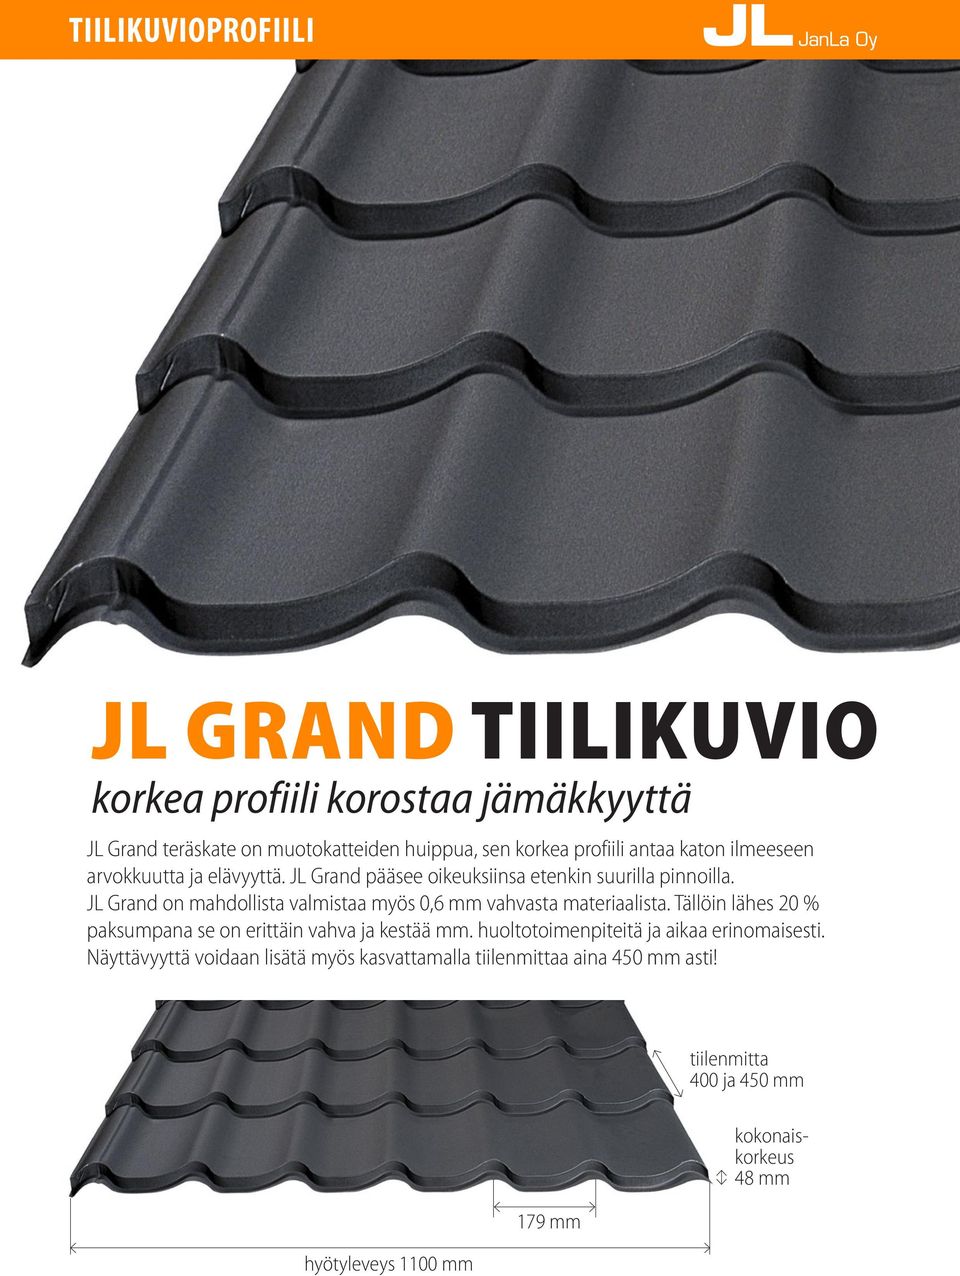 JL Grand on mahdollista valmistaa myös 0,6 mm vahvasta materiaalista. Tällöin lähes 20 % paksumpana se on erittäin vahva ja kestää mm.